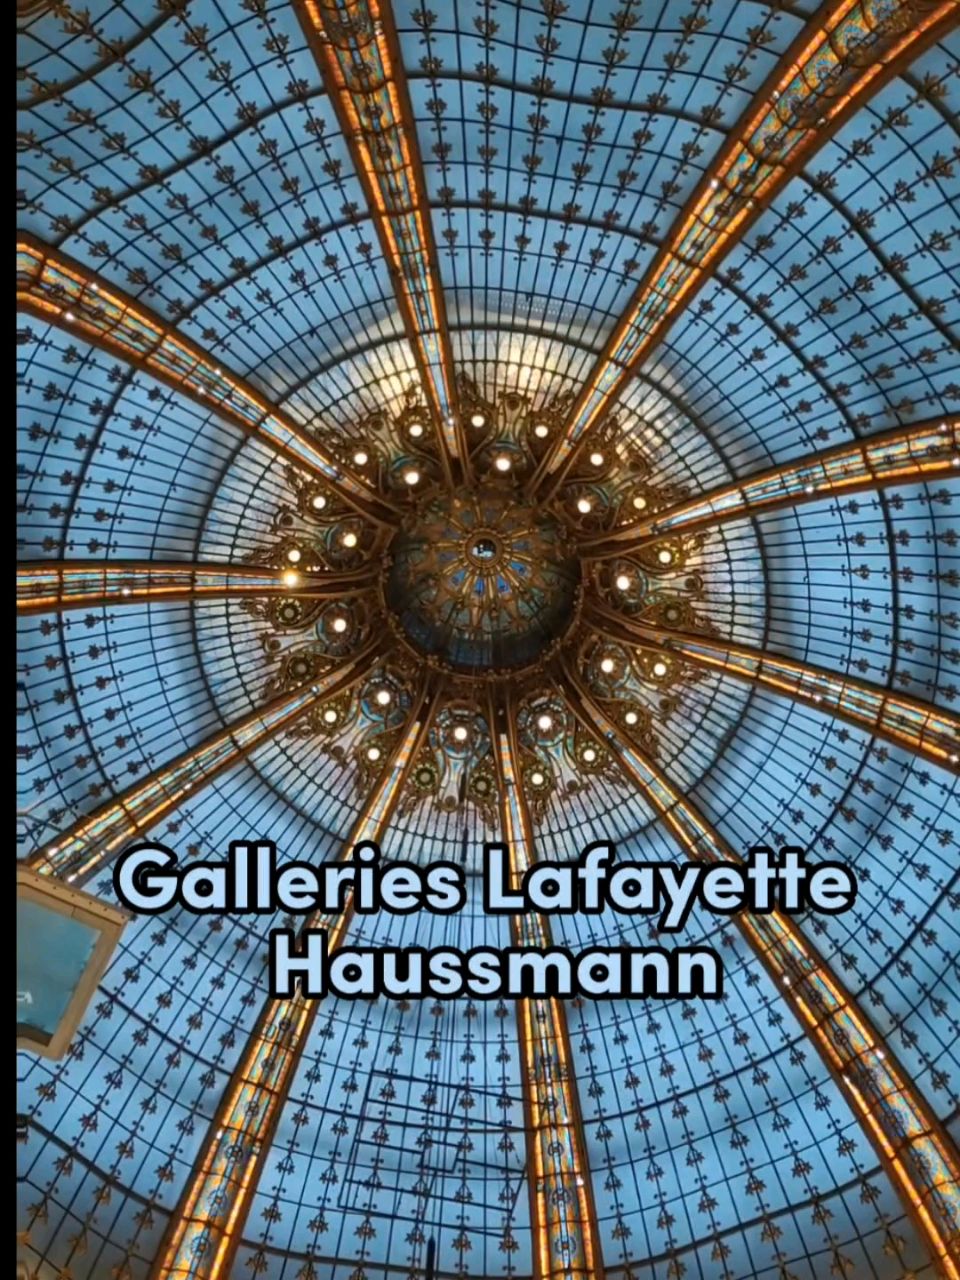 GALERIES LAFAYETTE PARIS HAUSSMANN – Encapsulate France